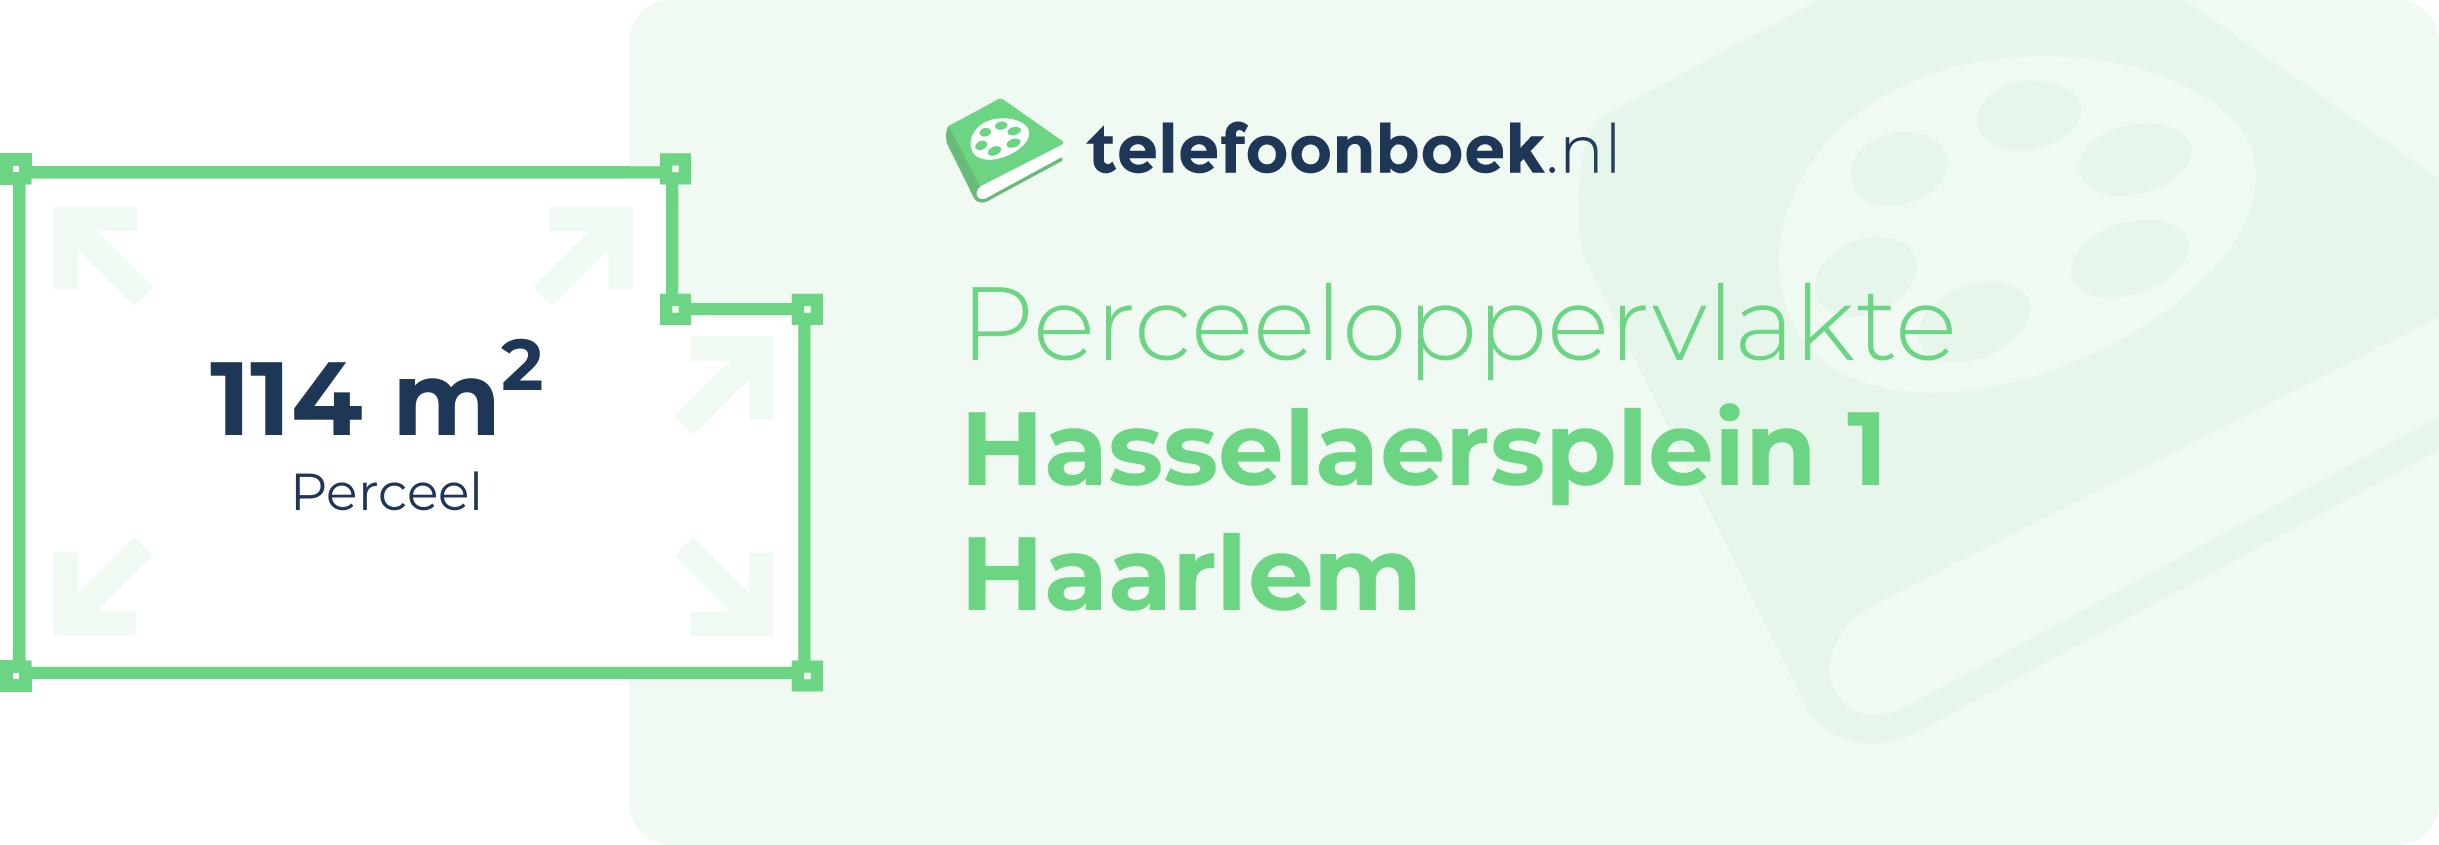 Perceeloppervlakte Hasselaersplein 1 Haarlem